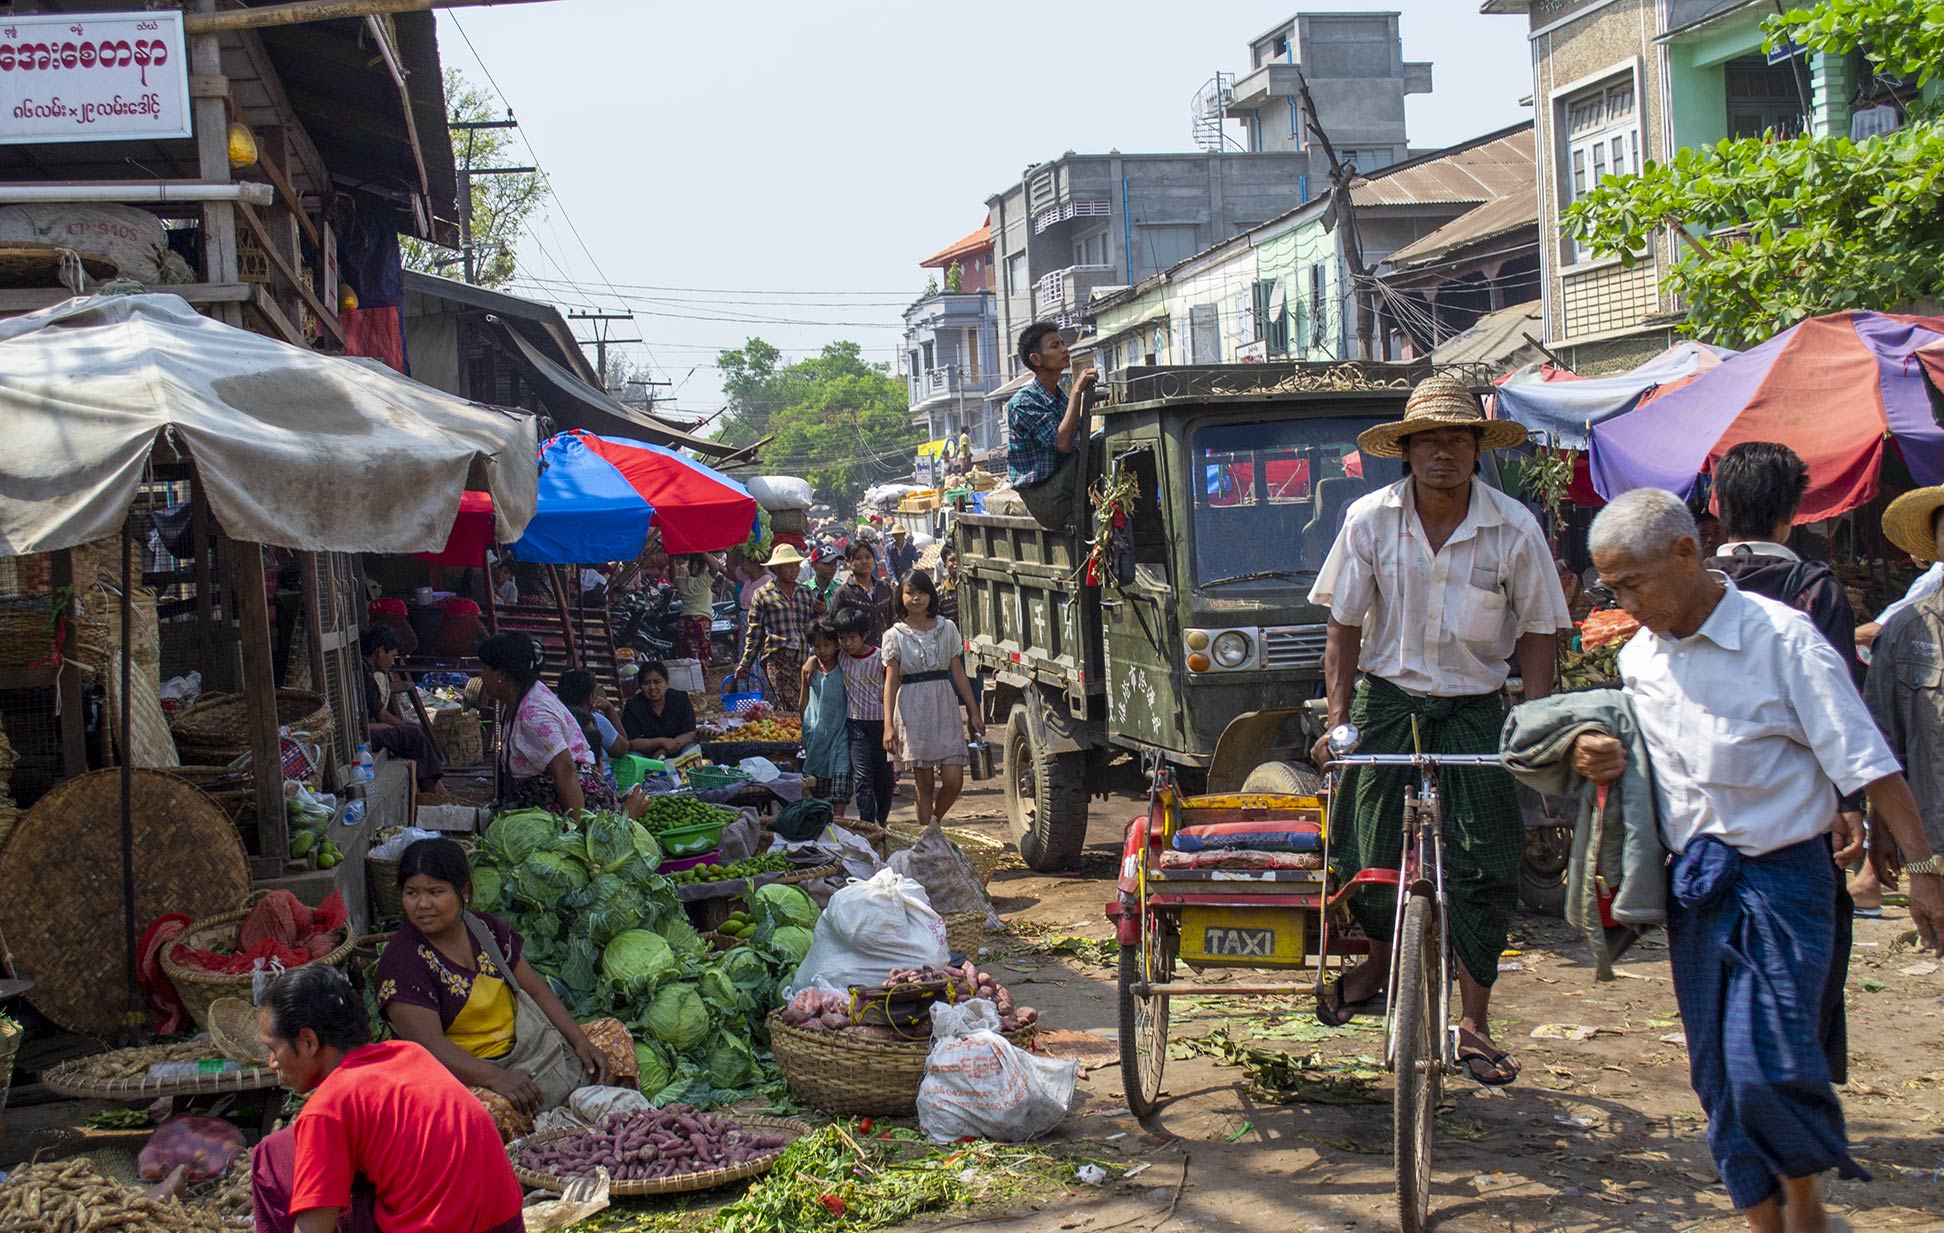 Market scene in Mandalay